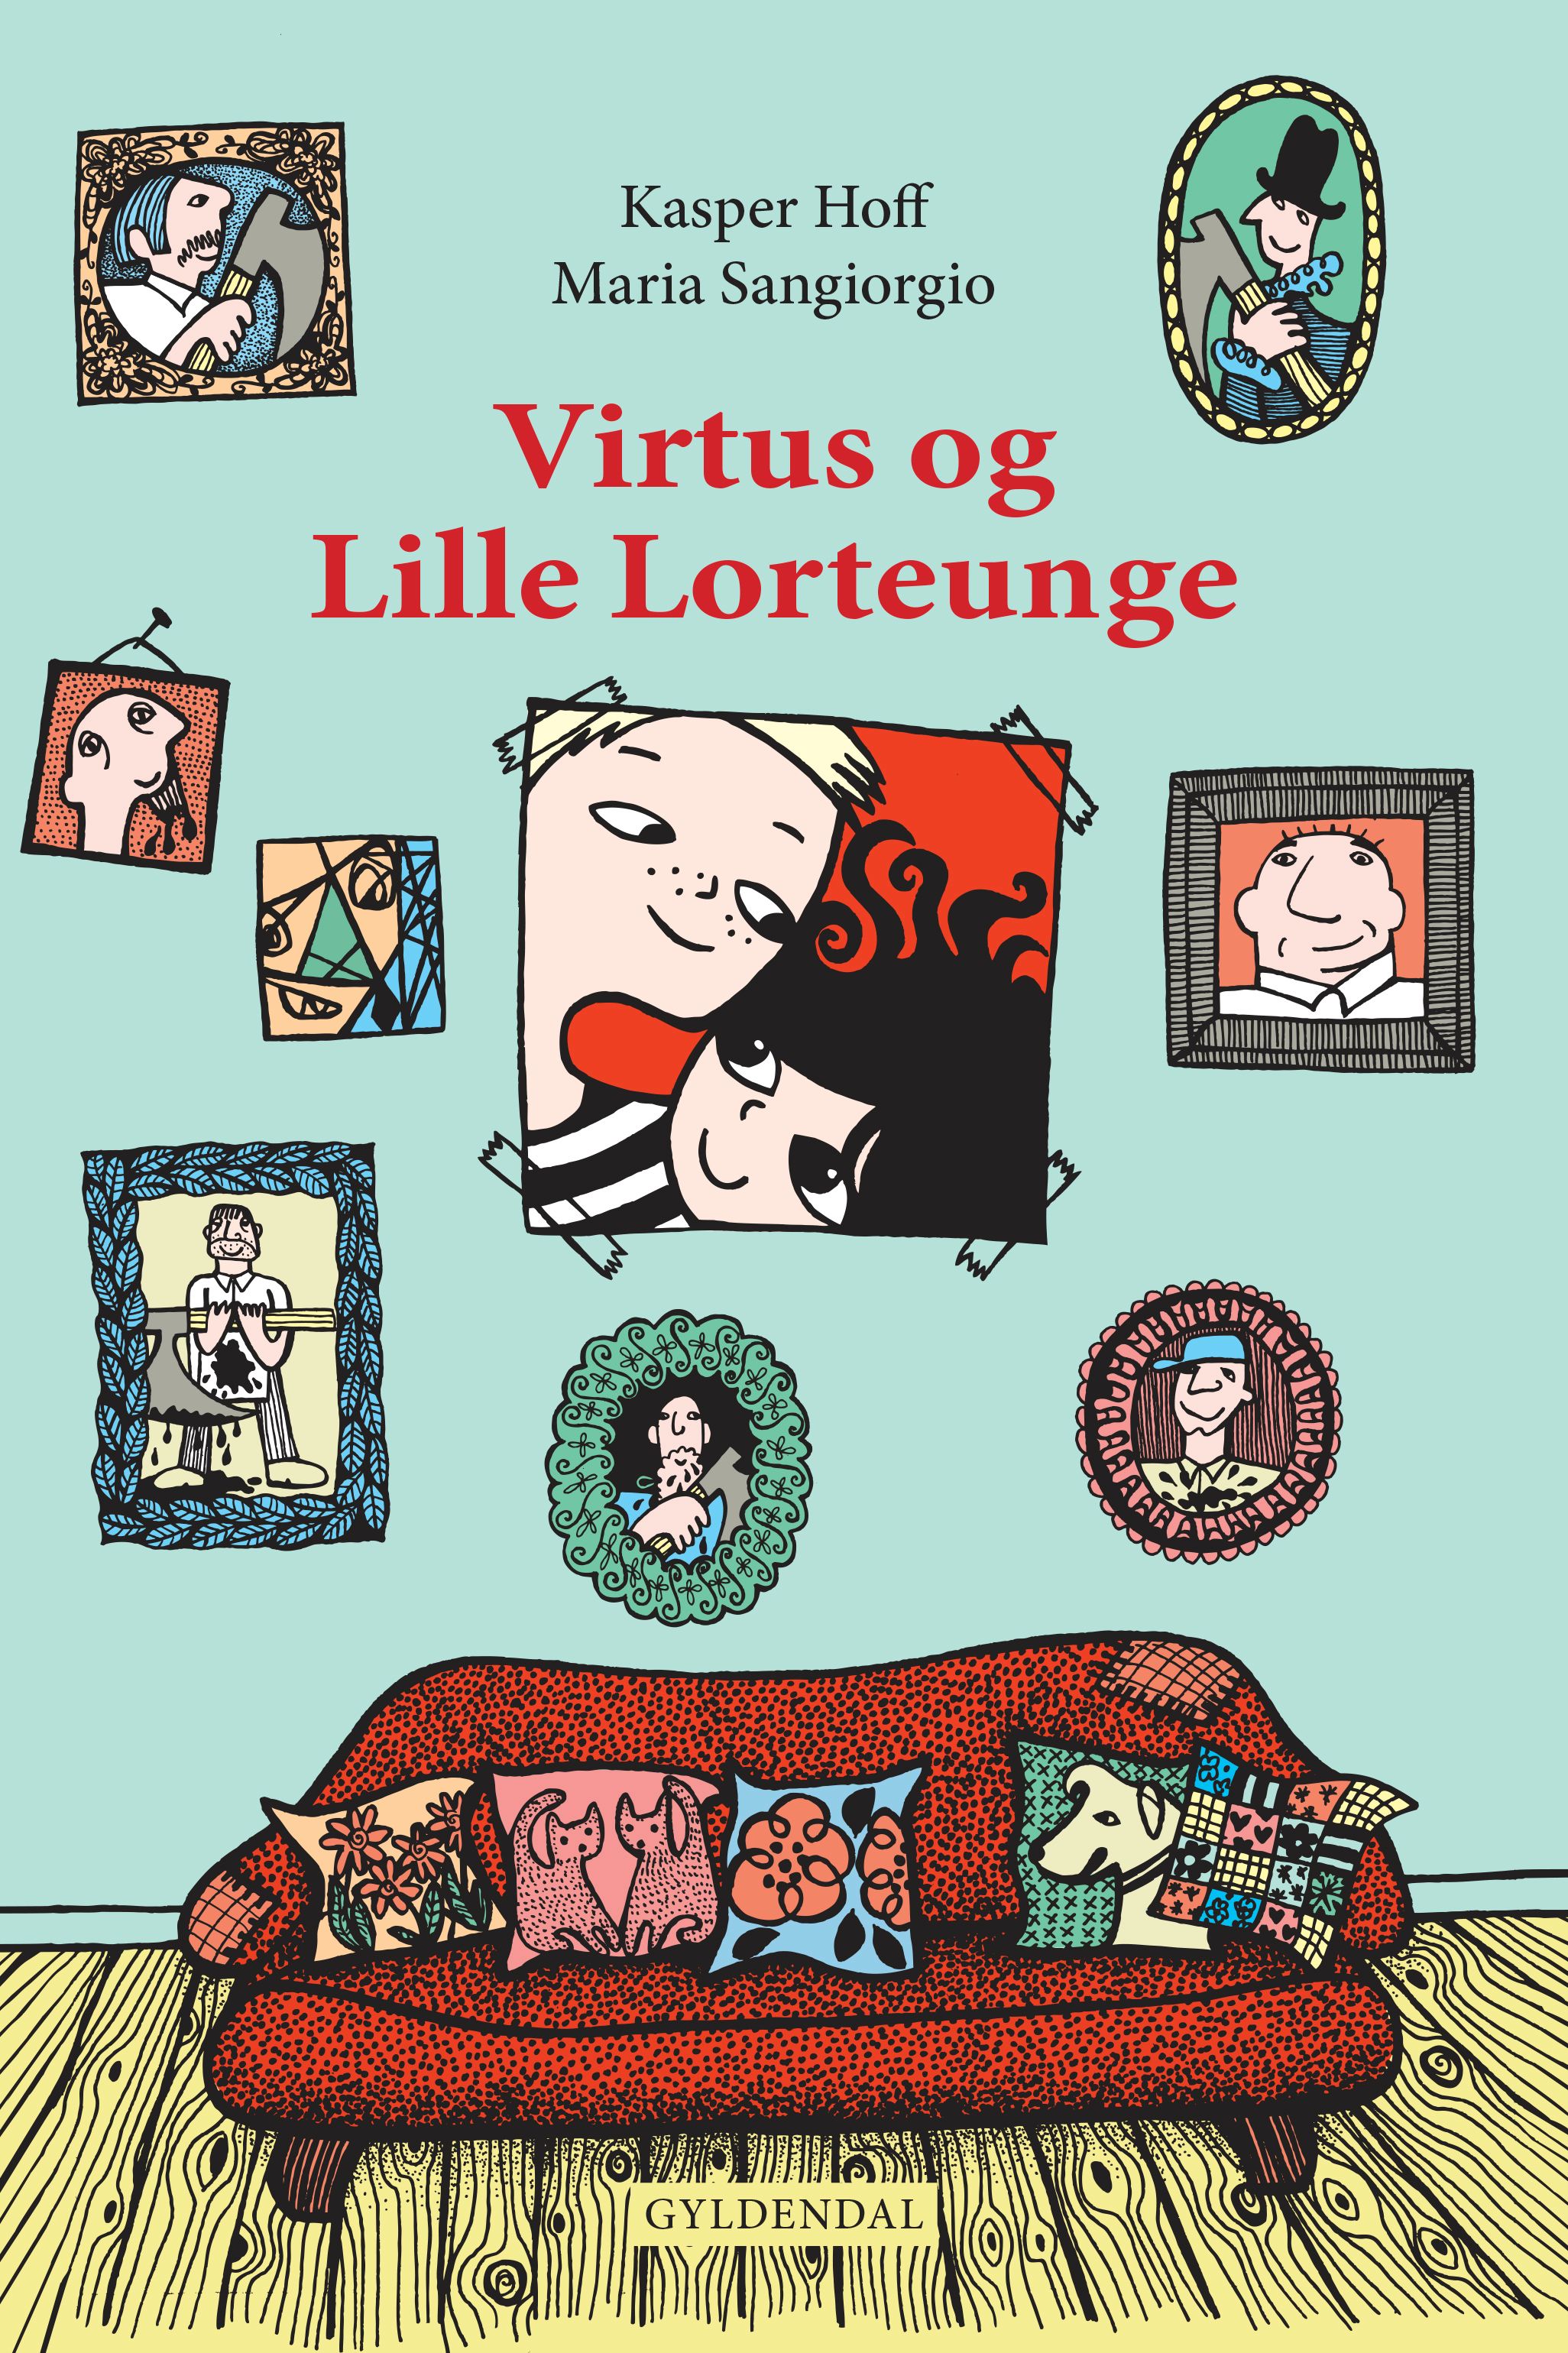 Virtus og Lille Lorteunge, e-bok av Kasper Hoff